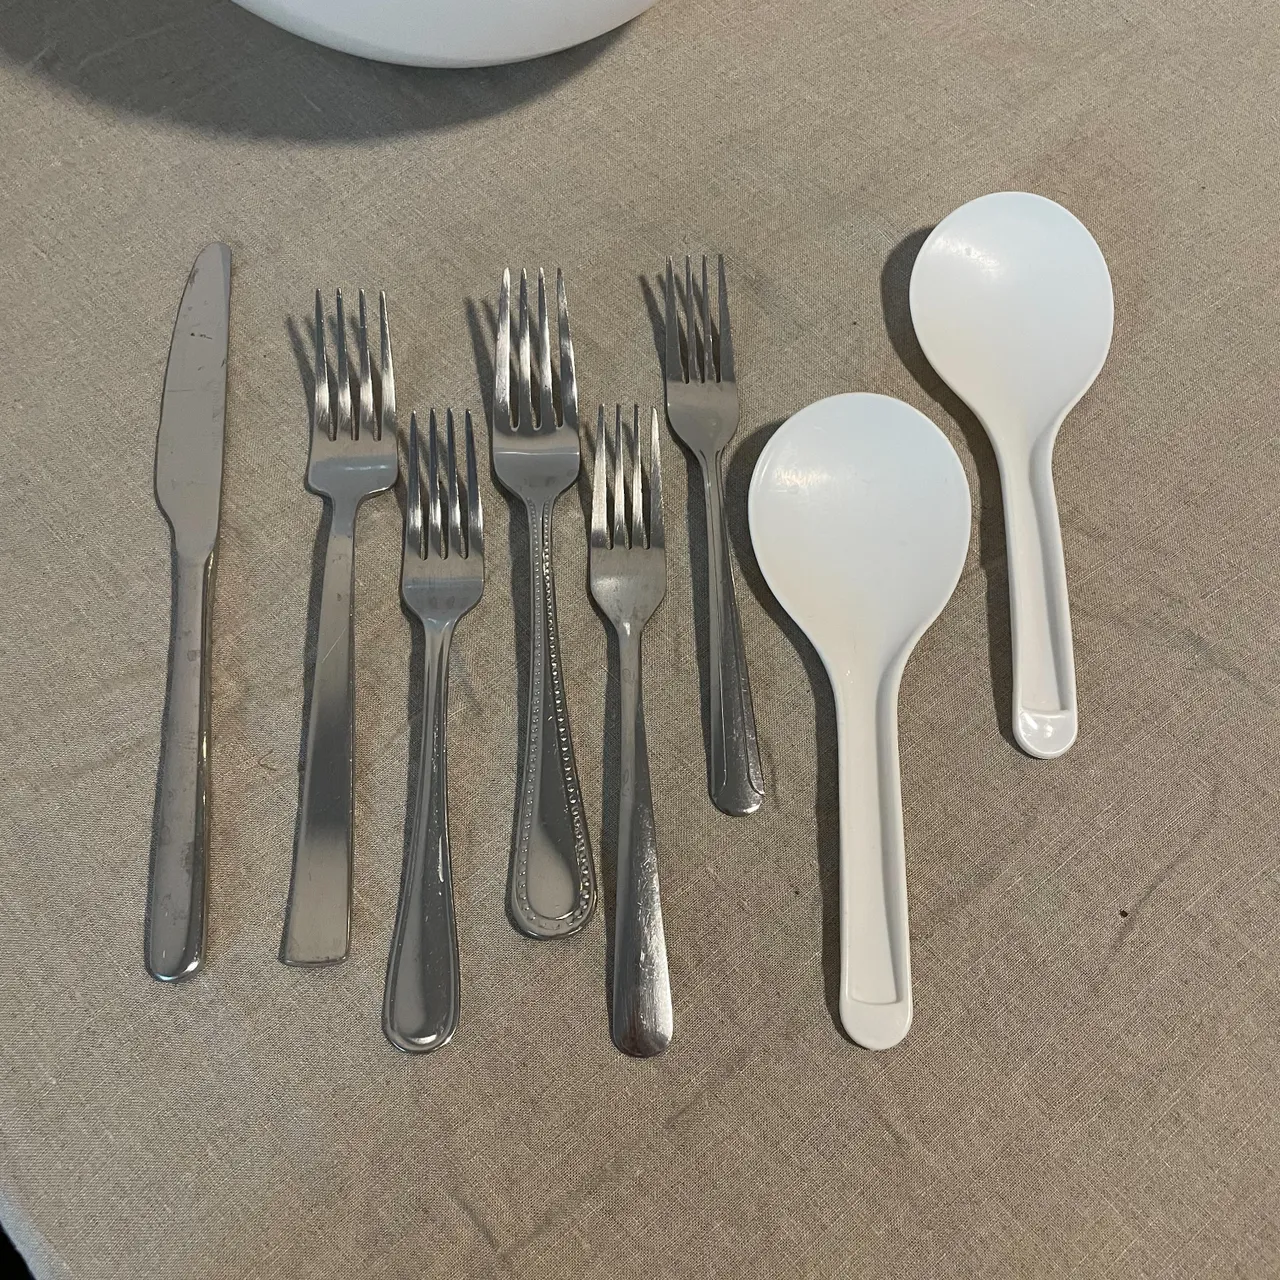 Free utensils photo 1